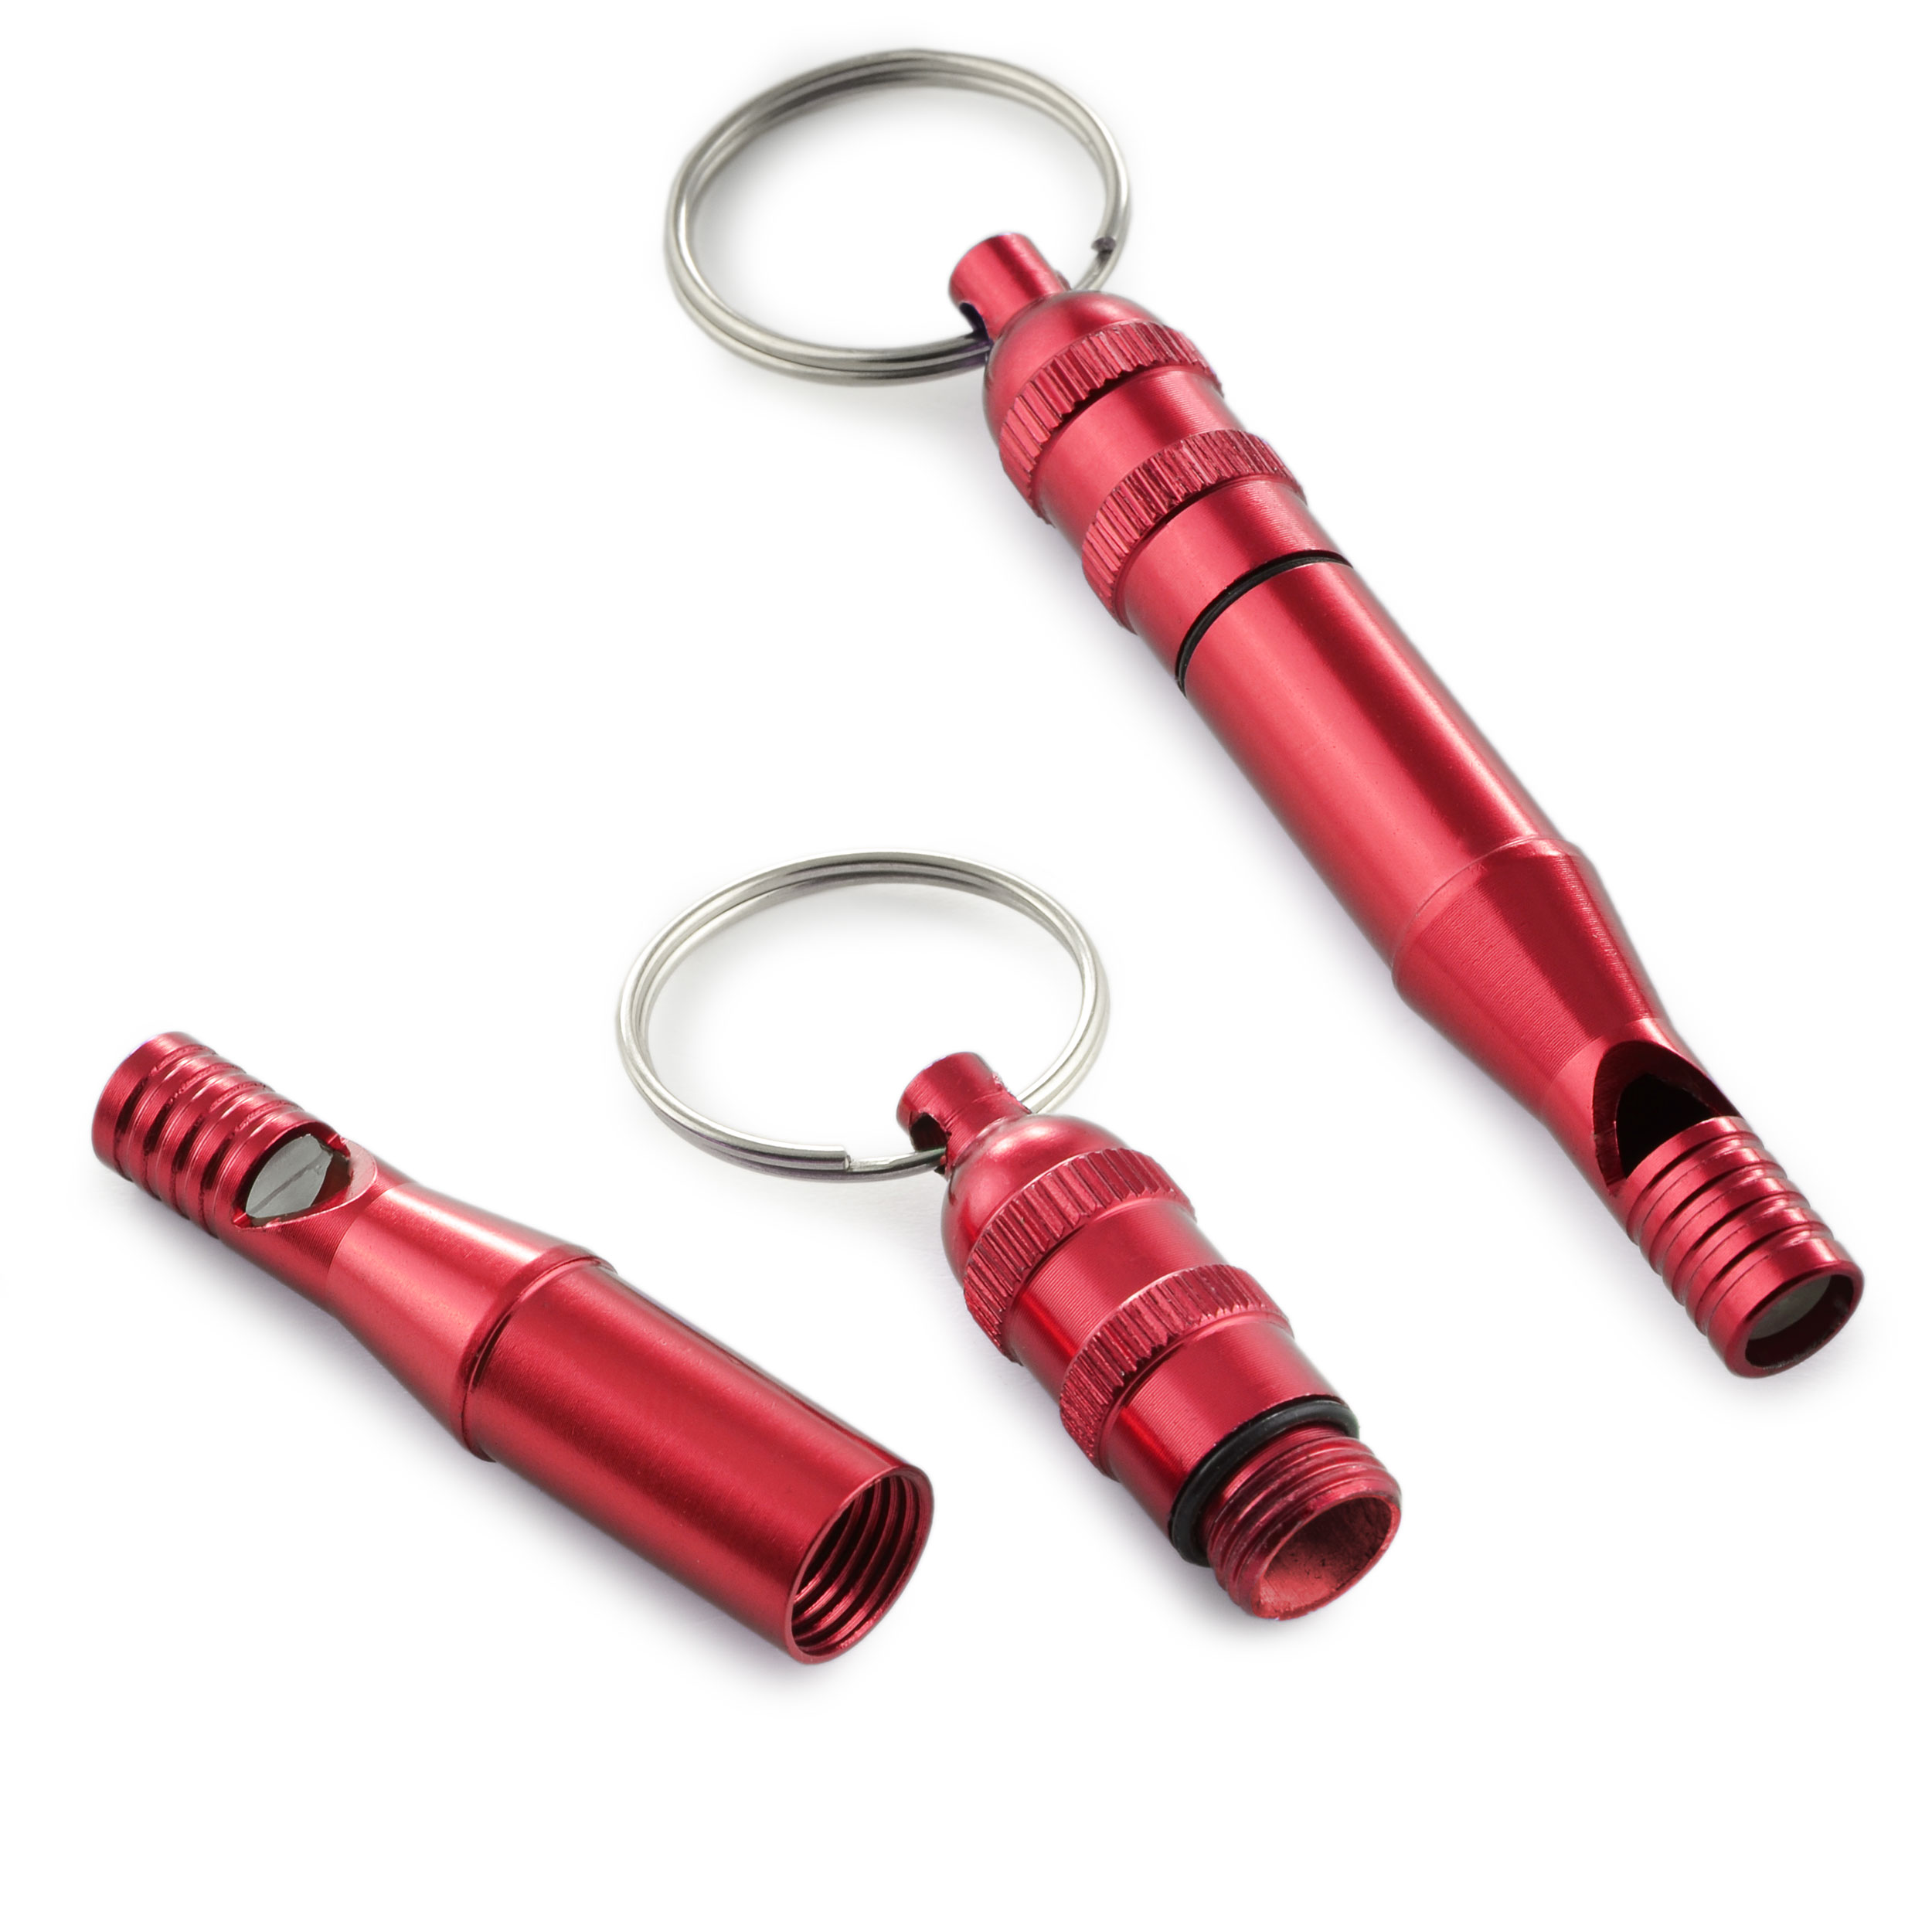 Hundepfeife Aluminium mit  Schraubbehälter für Kleinstteile und Schlüsselring "whistle & storage"